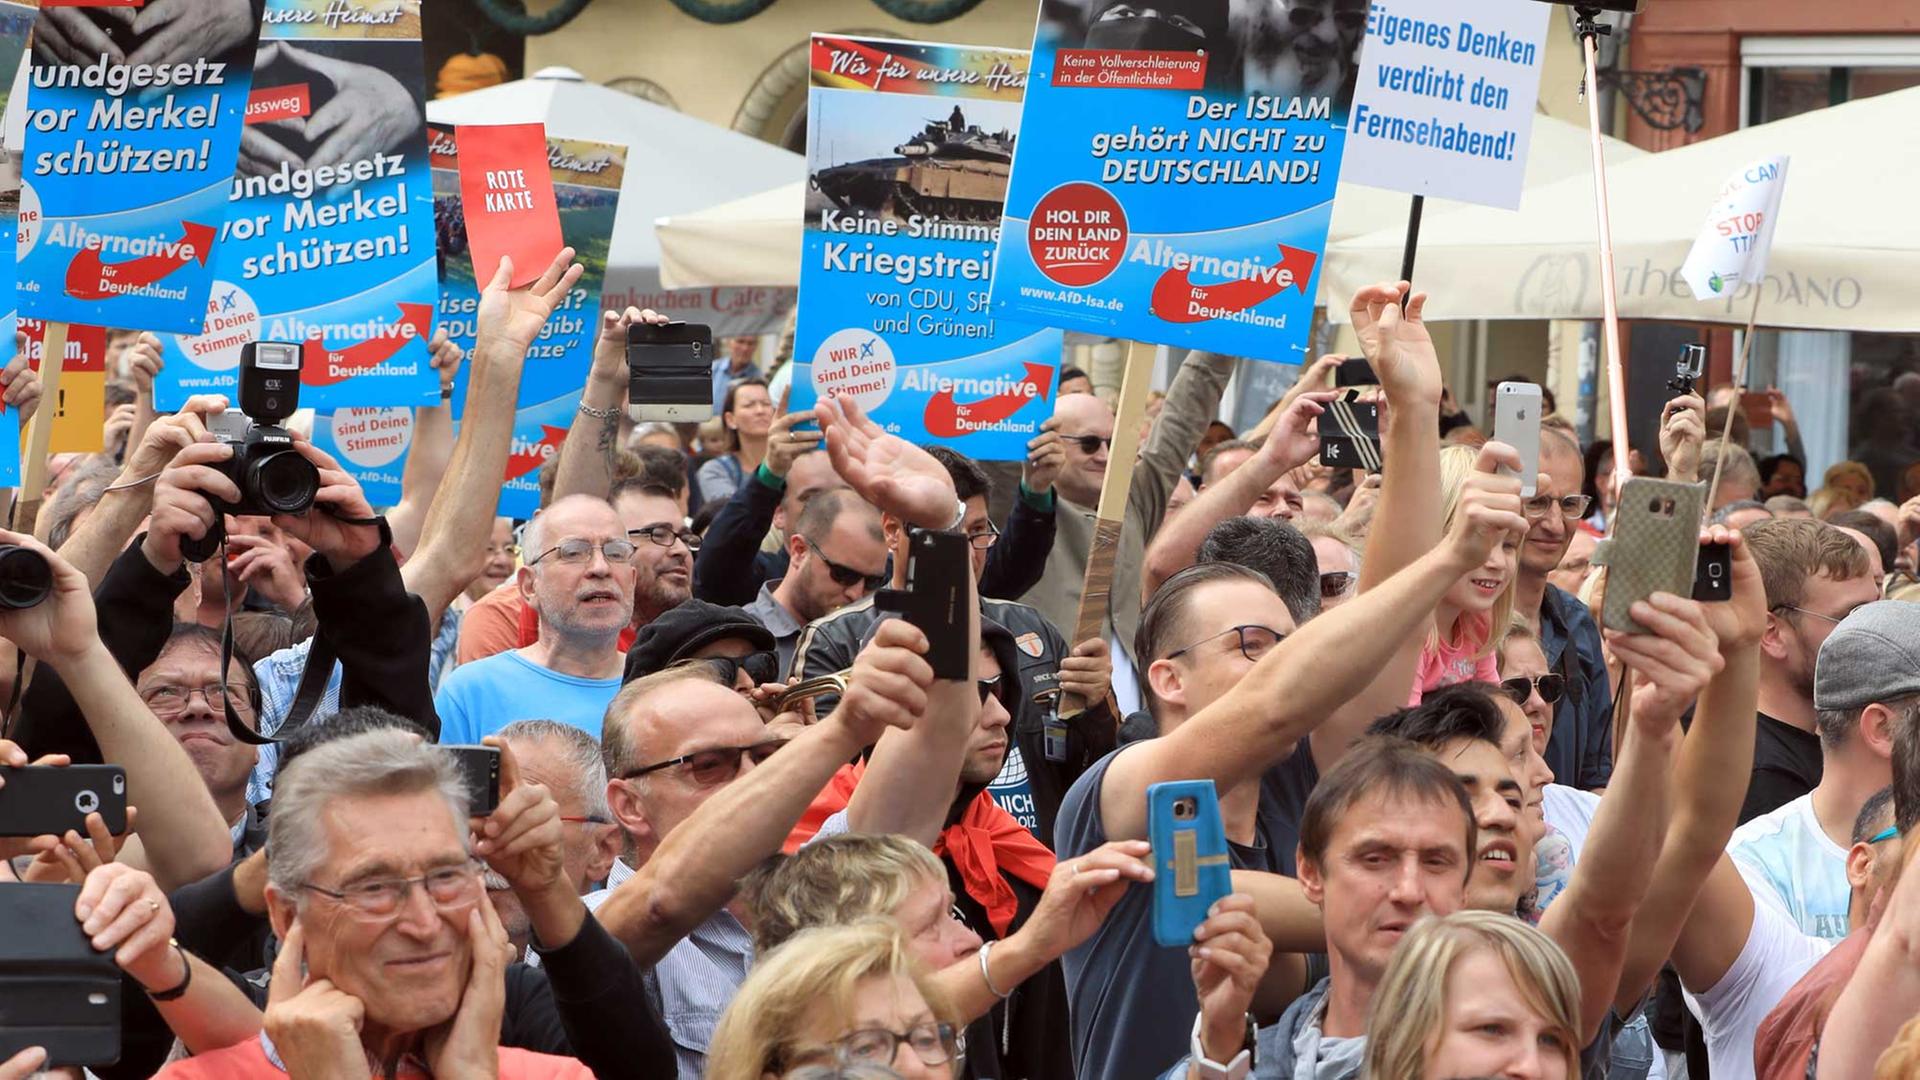 Demonstranten halten am 26.08.2017 am Rande einer ahlkampfveranstaltung der CDU mit Bundeskanzlerin Merkel auf dem Marktplatz in Quedlinburg (Sachsen-Anhalt) Plakate der Partei Alternative für Deutschland (AfD).